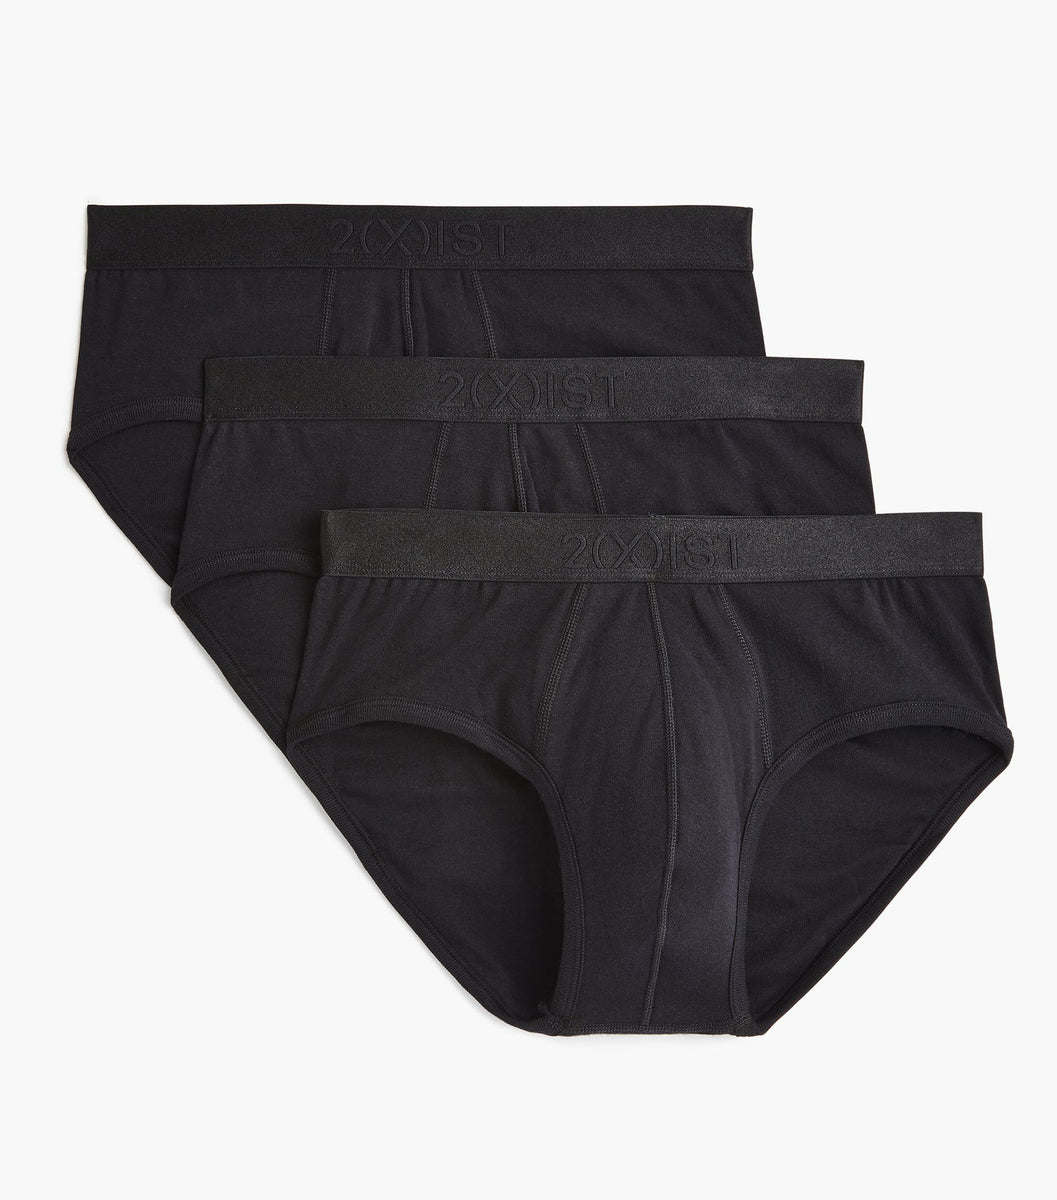 2(X)IST mens 3103462003s briefs underwear, Black, Small US at  Men's  Clothing store: Briefs Underwear